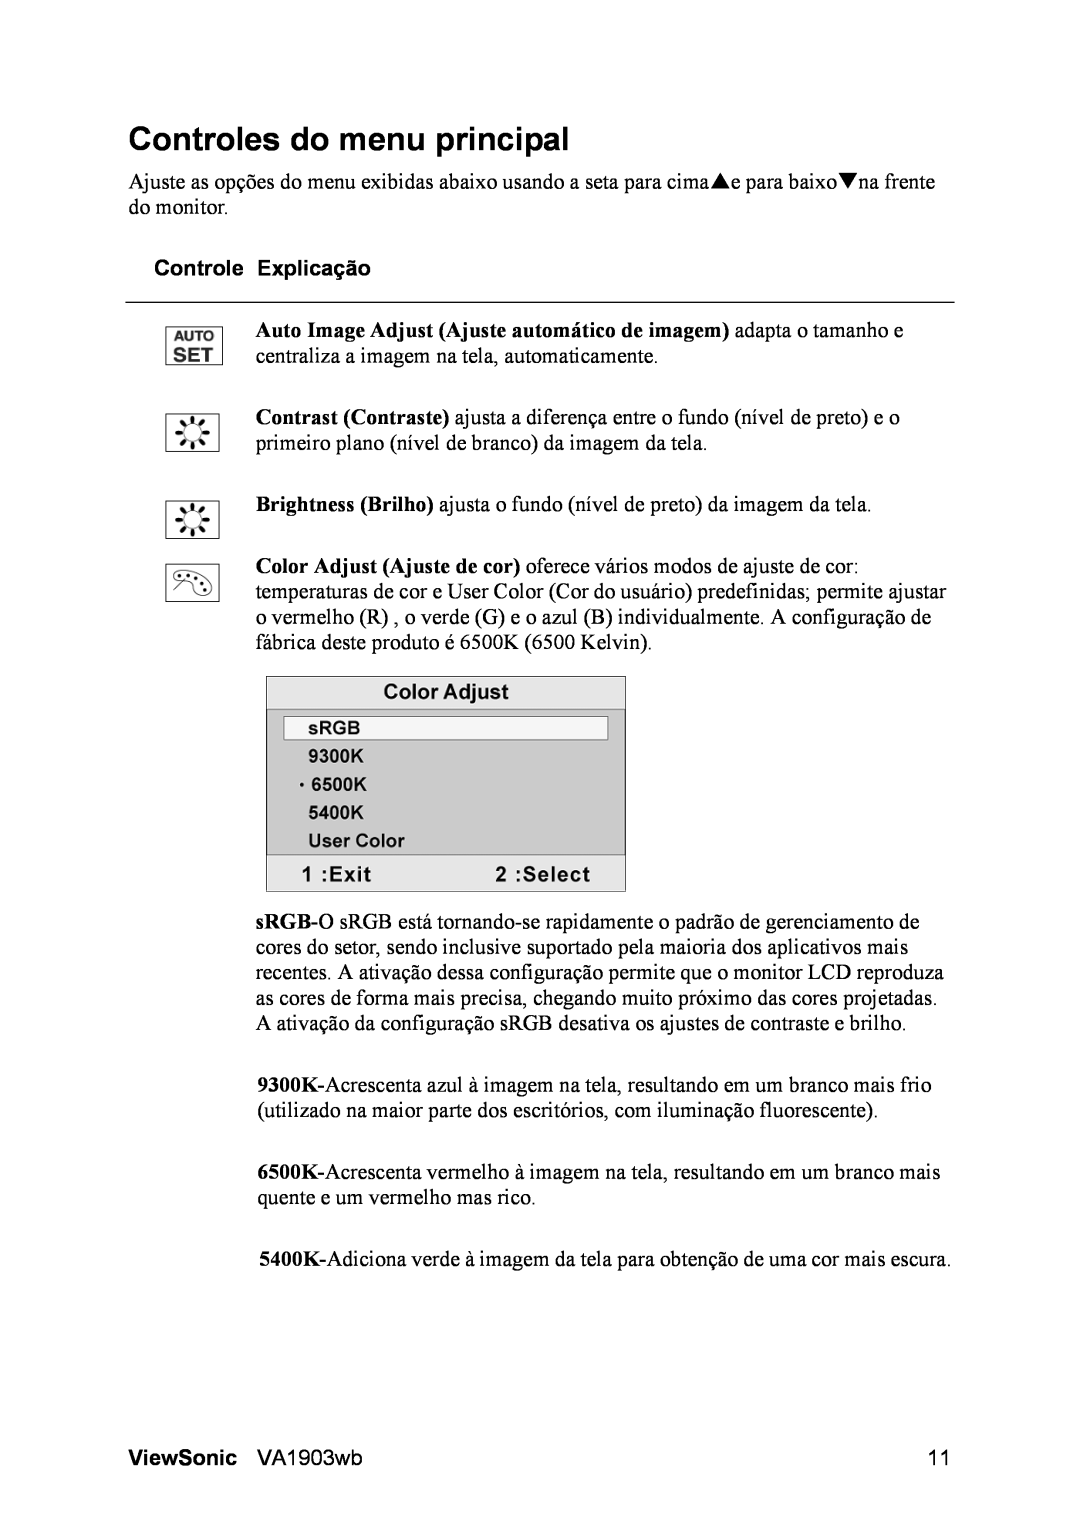 ViewSonic D Display manual Controles do menu principal, Controle Explicação, ViewSonic VA1903wb 